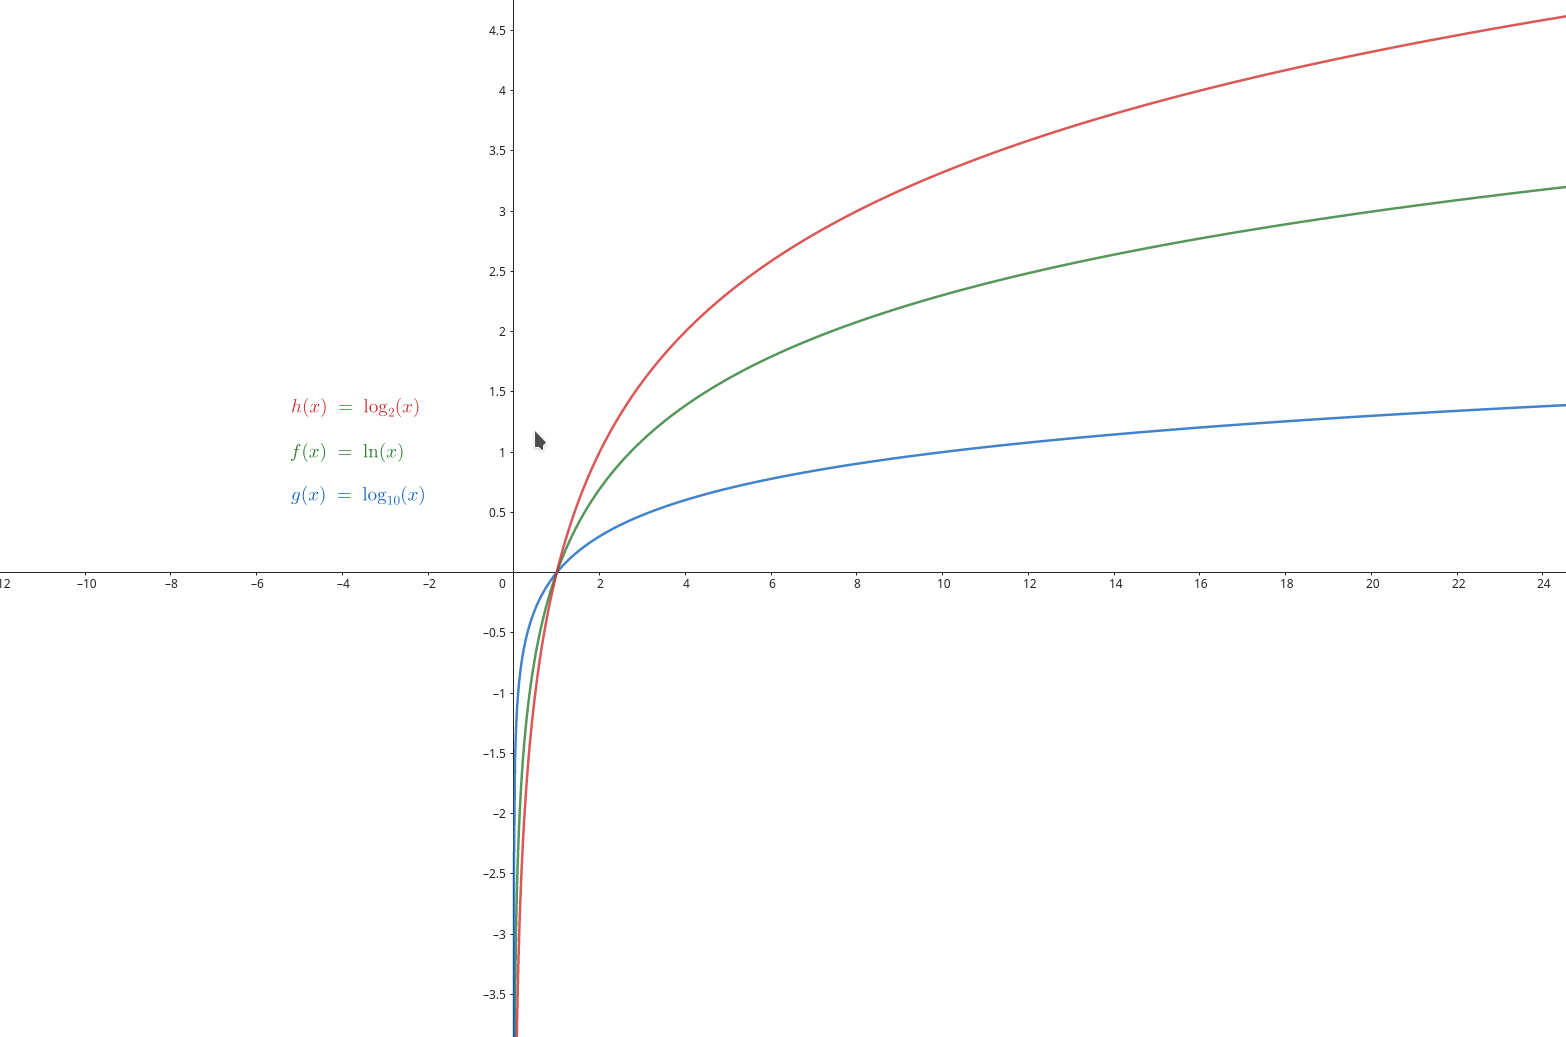 wykresy logarytmów - ln(x), log2(x), log(x)